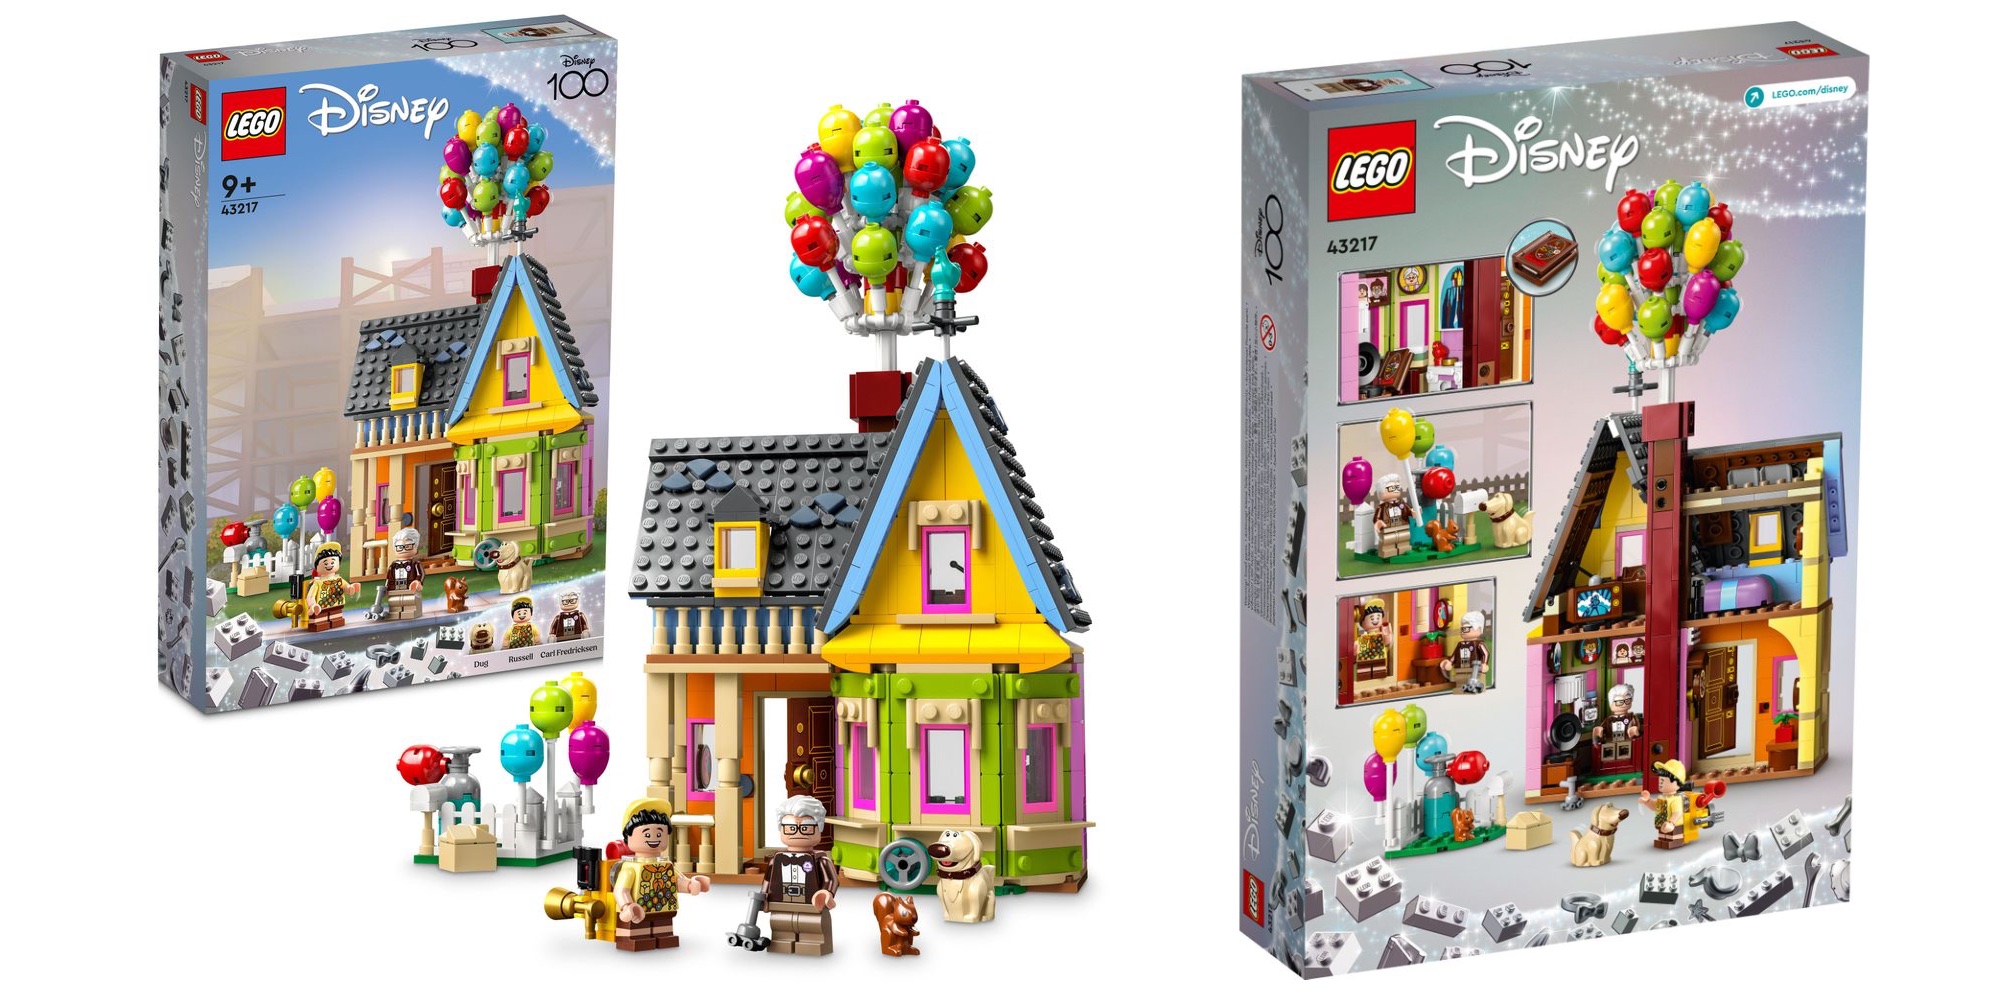 Lego annuncia il set della casa di UP dal film Disney